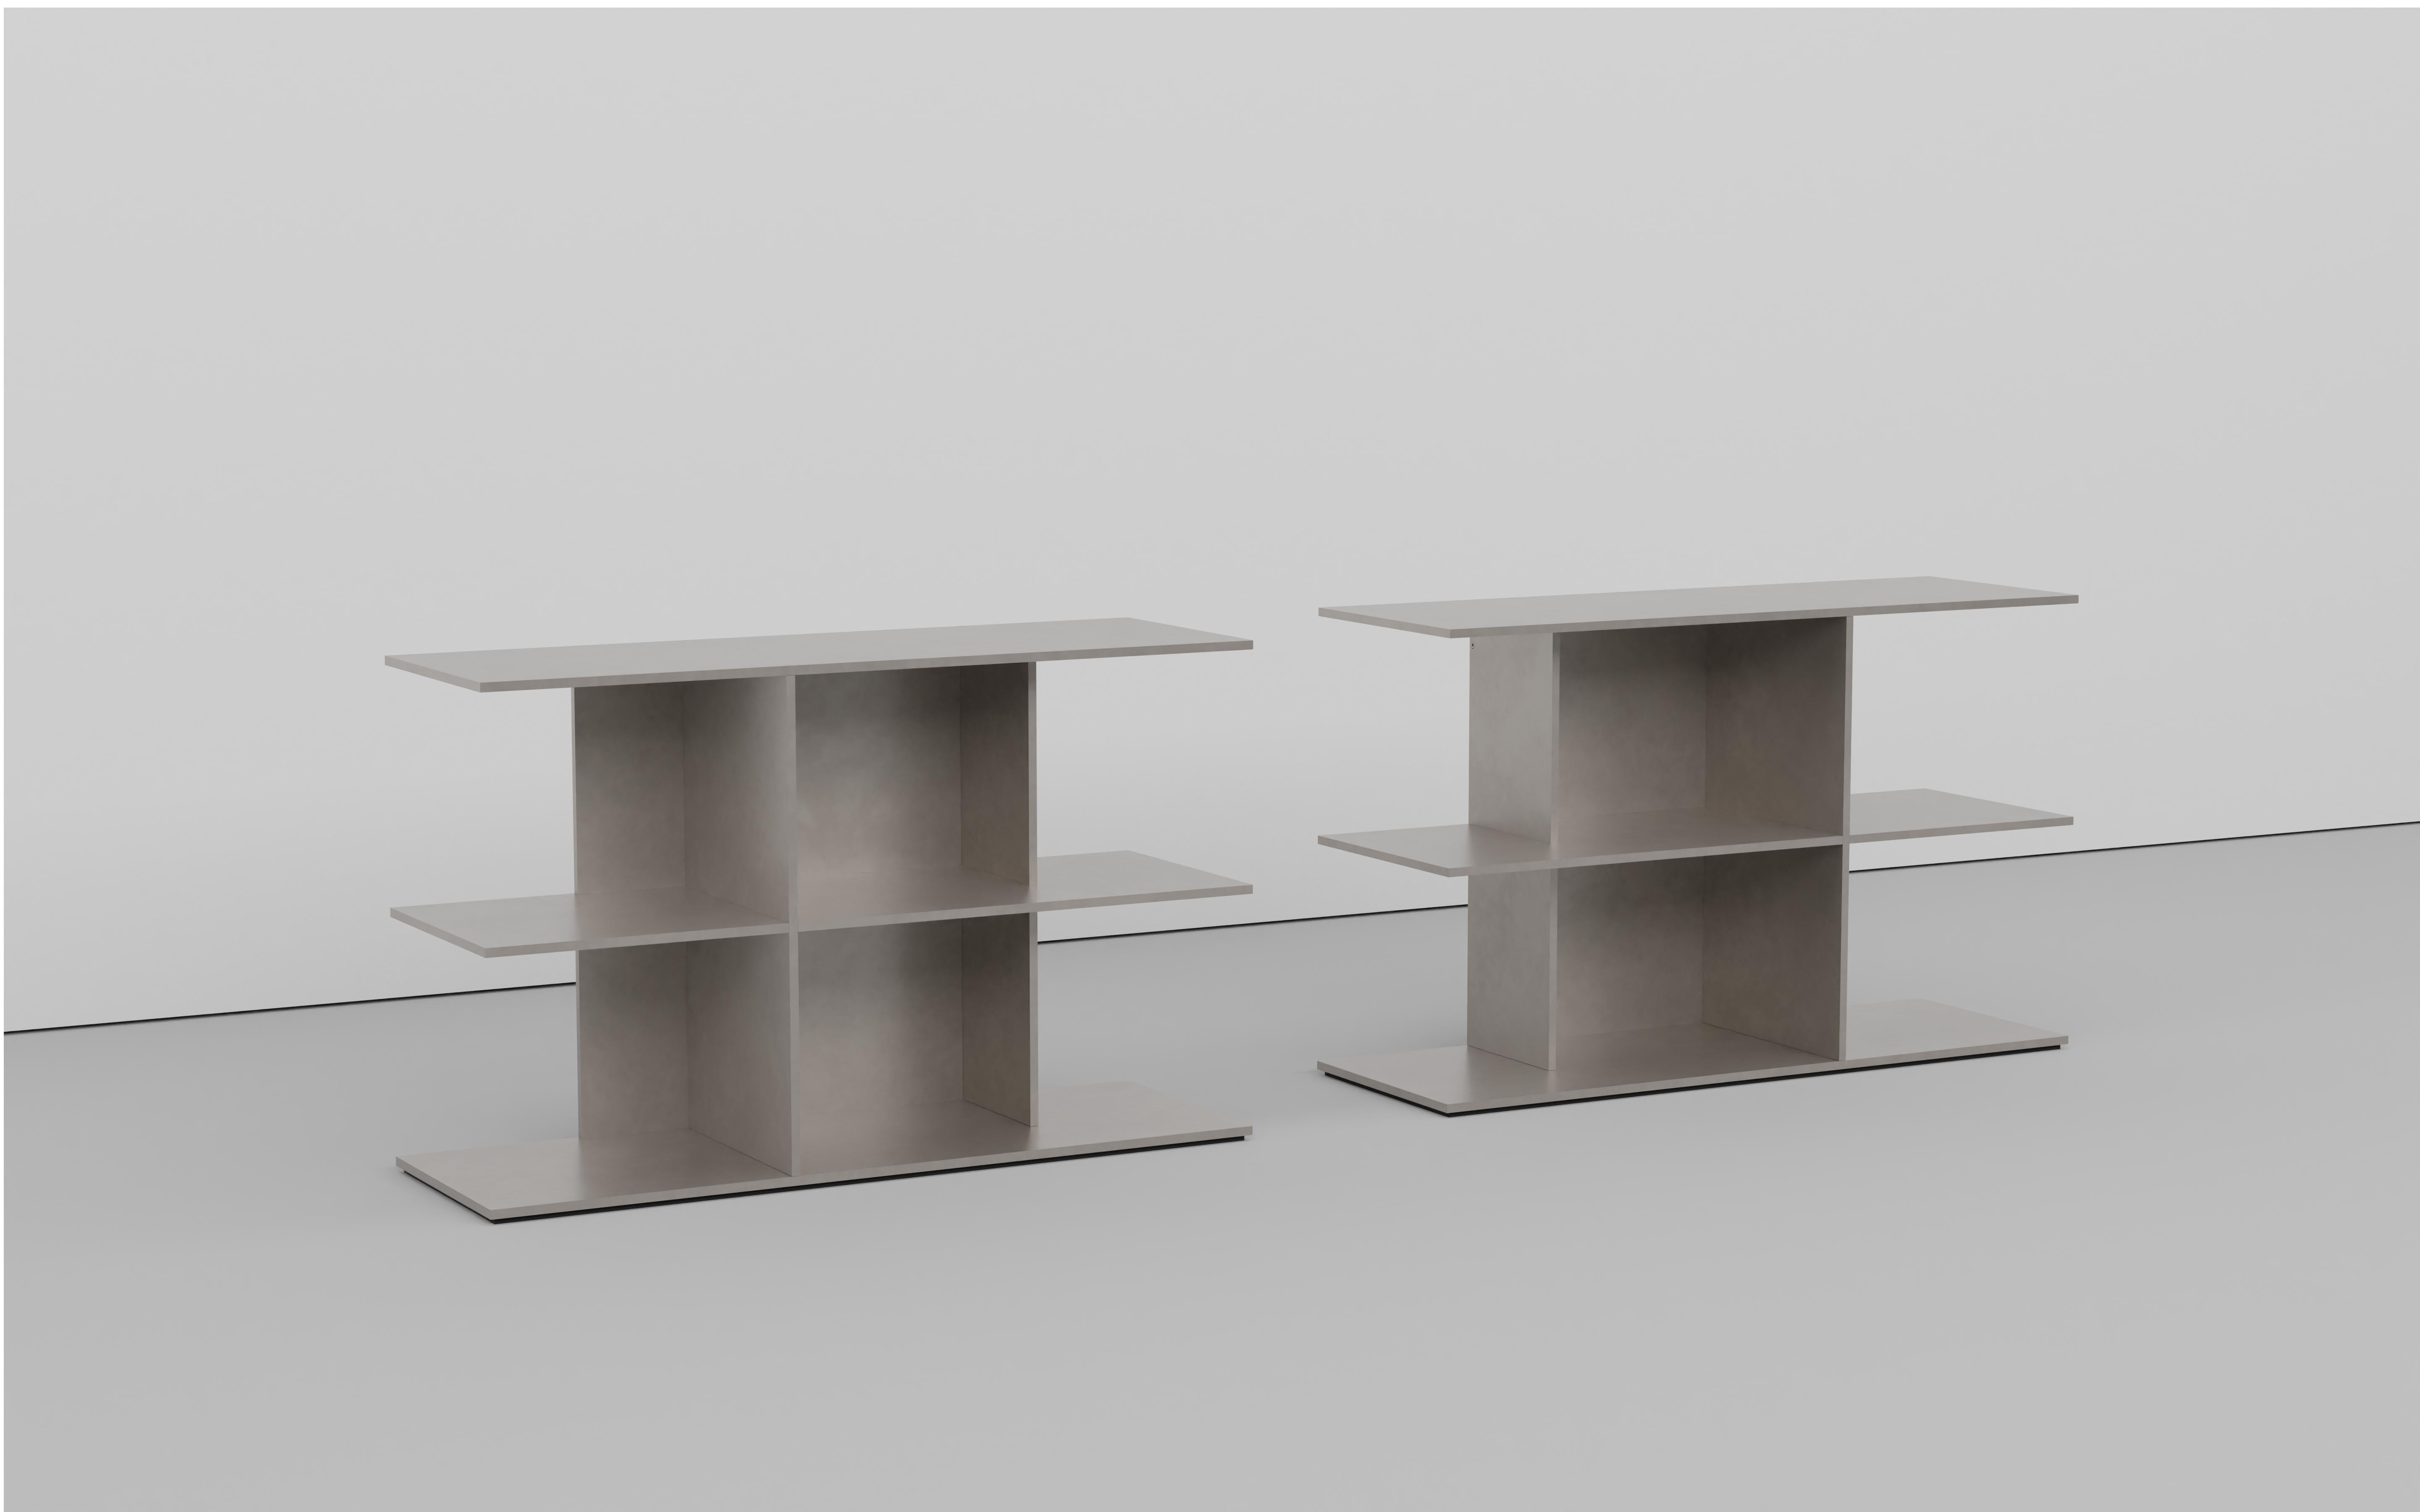 Minimalistischer Stufentisch aus zusammengeschraubten 3-8 Zoll dicken Aluminiumplatten. Auf der Unterseite befindet sich eine vertiefte, geschnittene Gummiplatte mit einem eingeschobenen, signierten Label. Erhältlich in gespiegelter Ausführung links